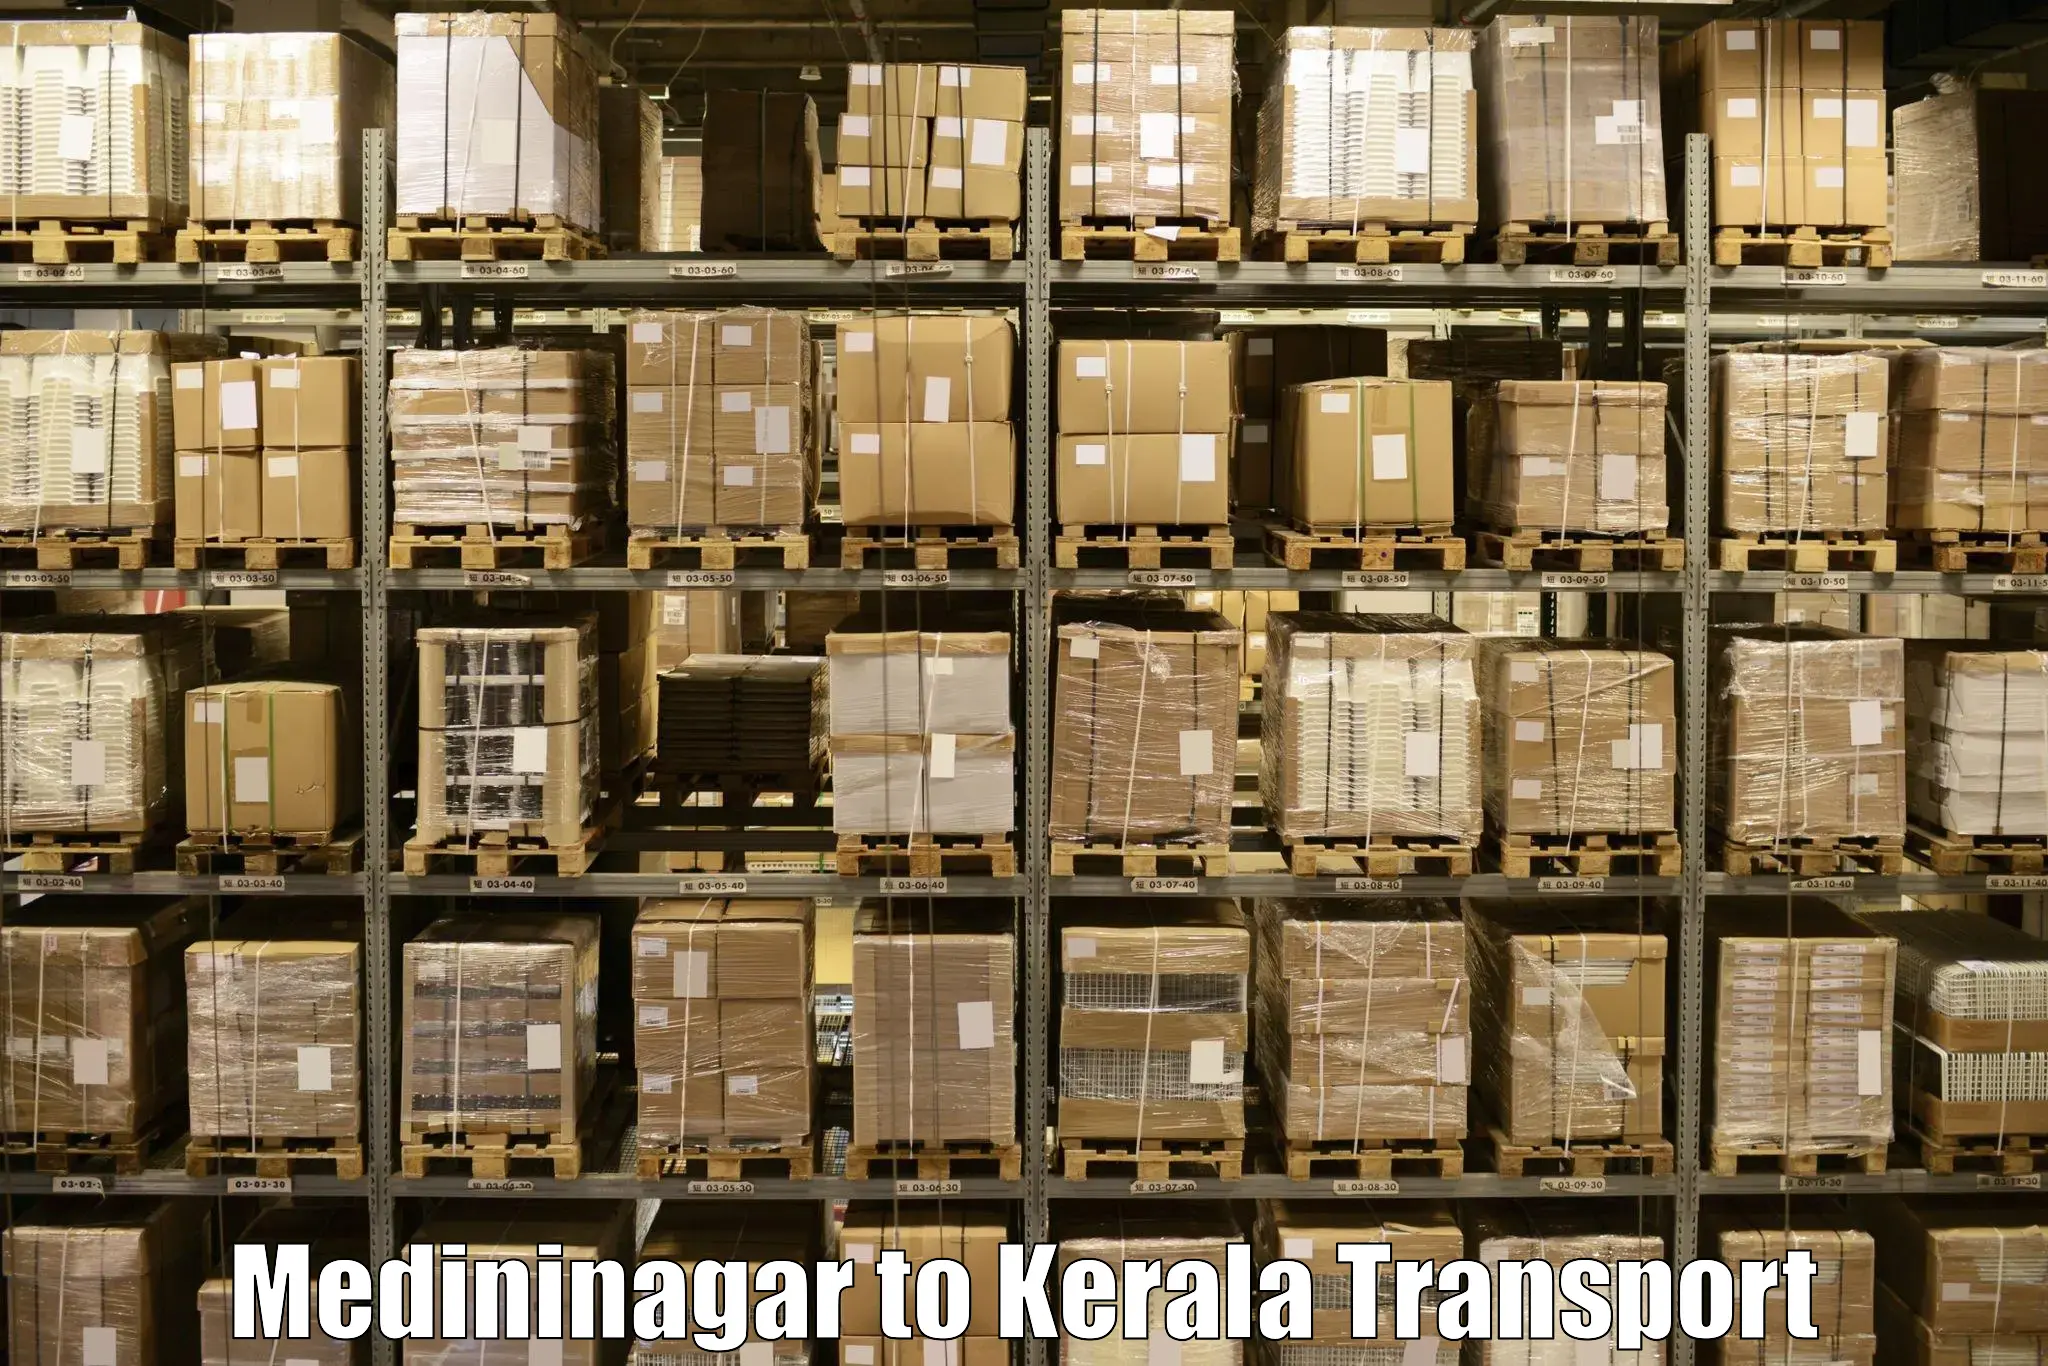 Transport shared services in Medininagar to Mavelikara